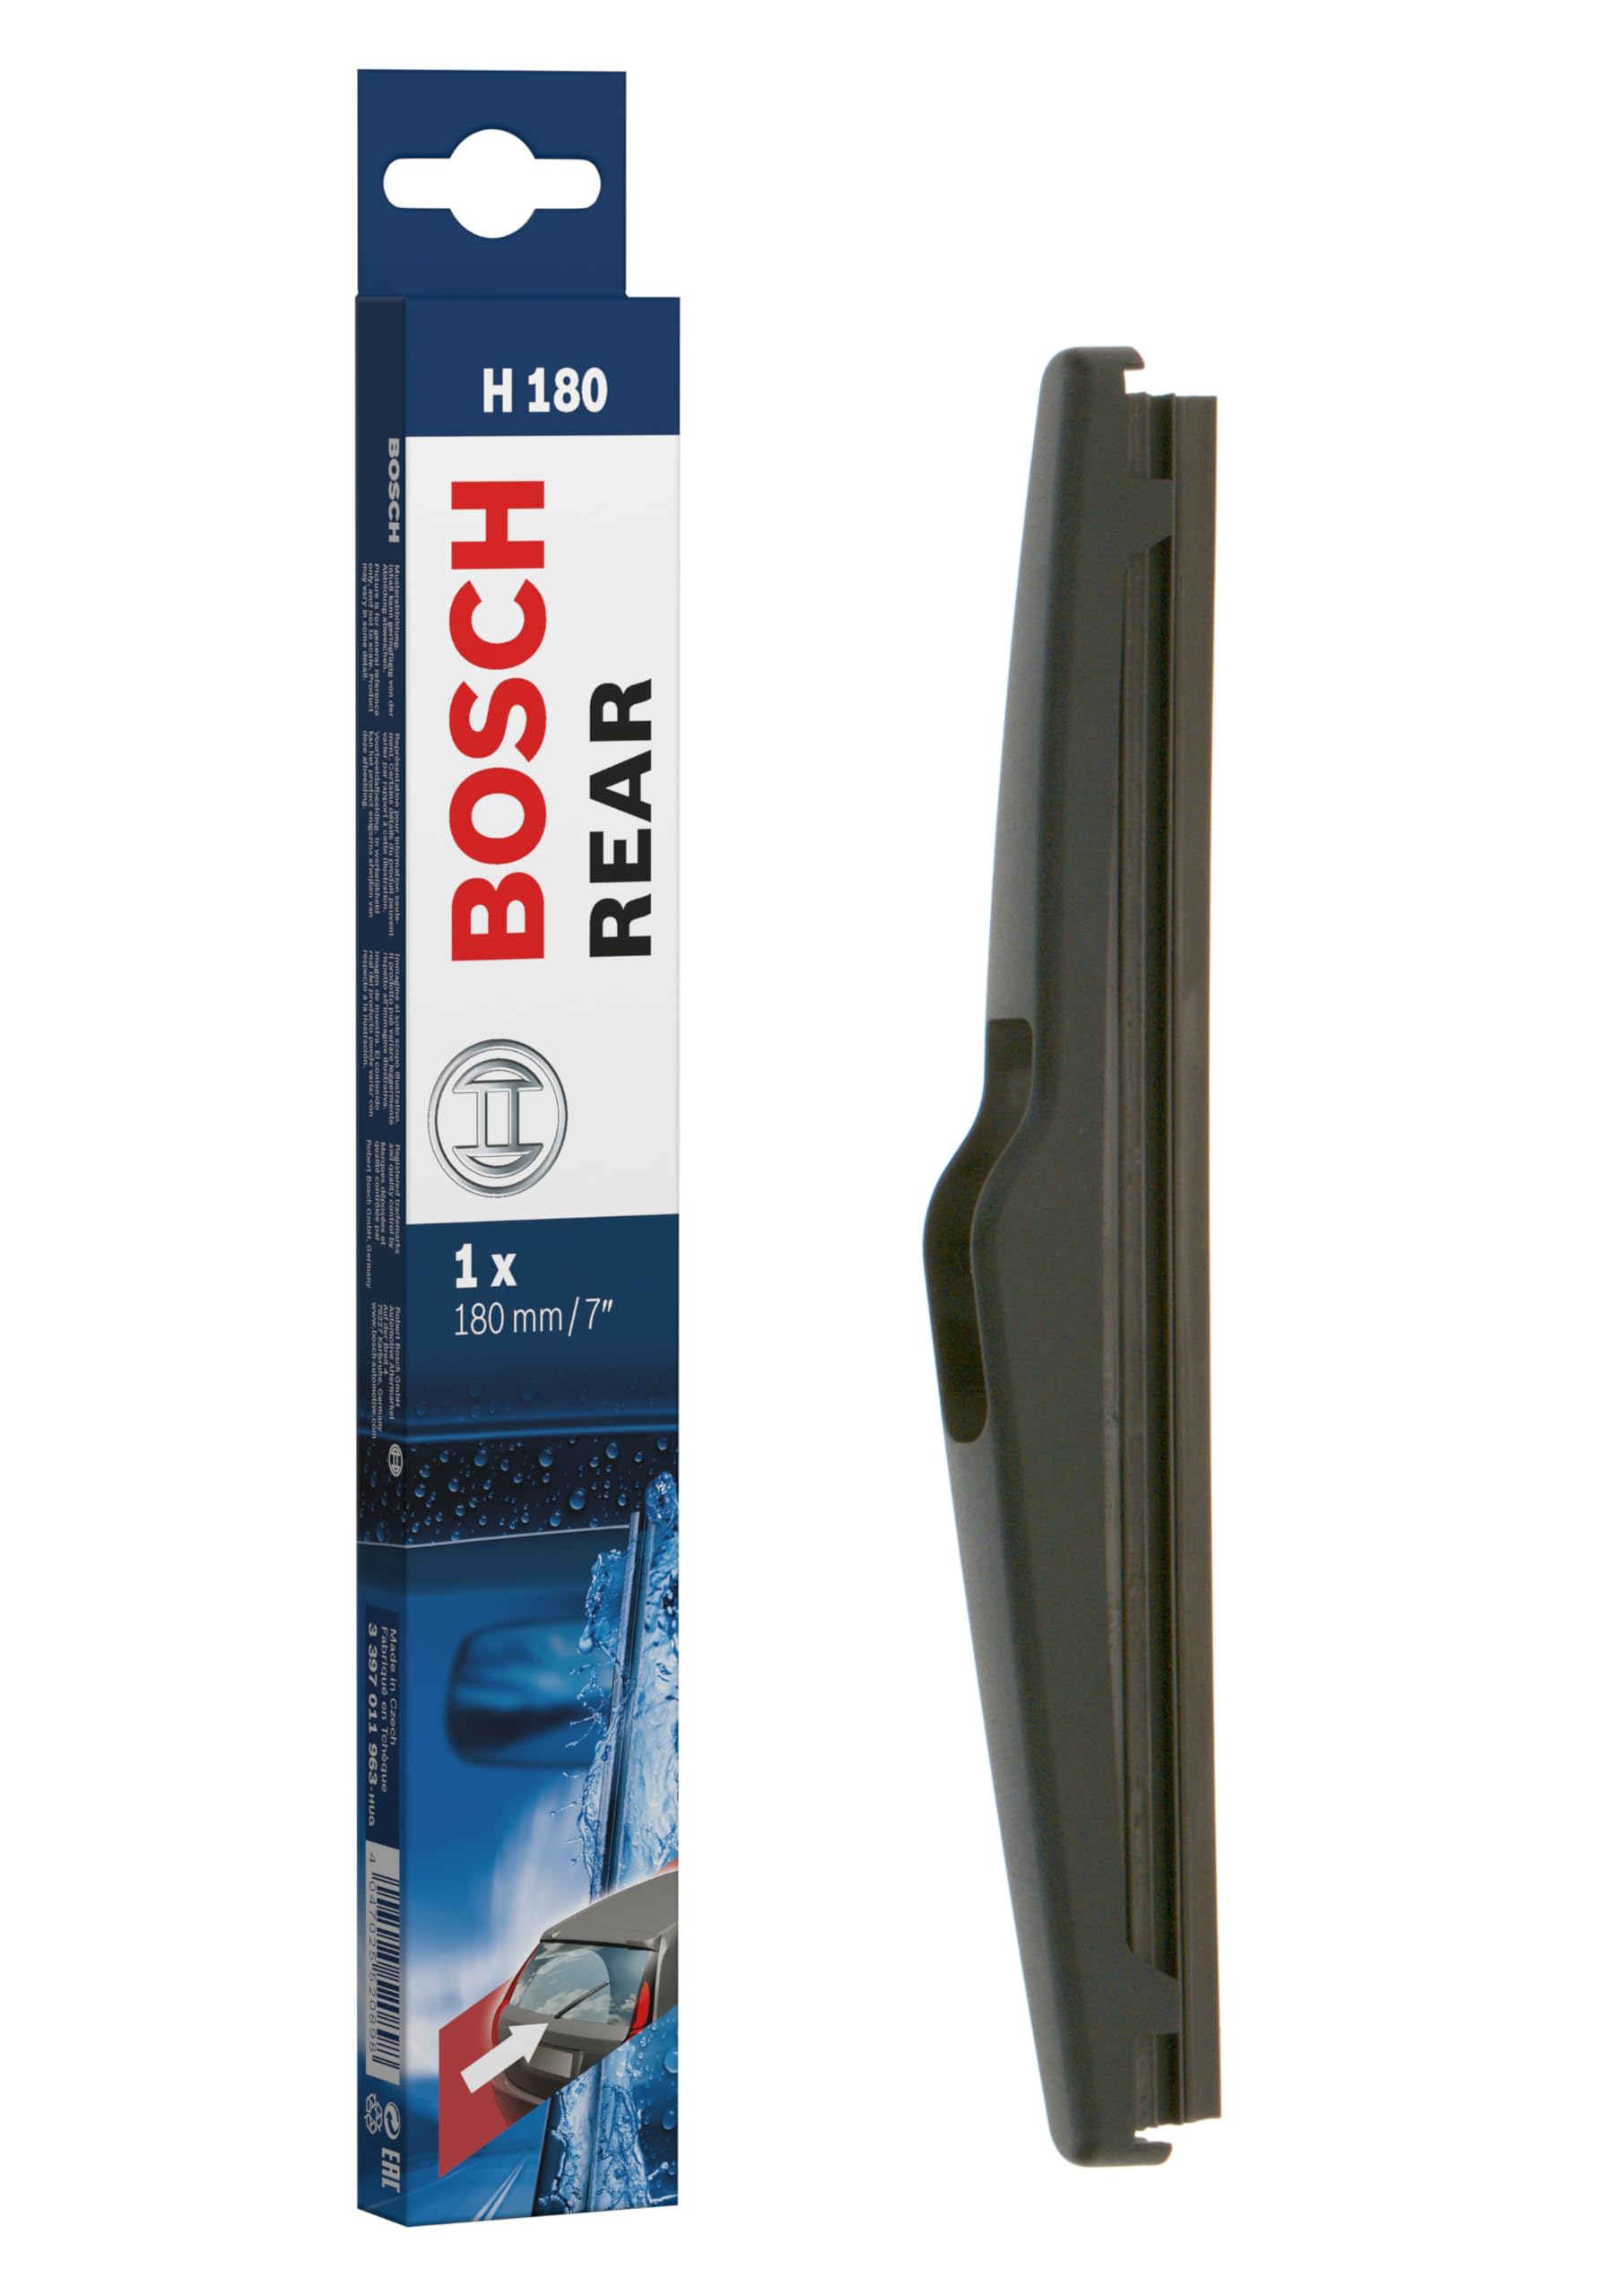 Bosch Scheibenwischer Rear H180, Länge: 180mm – Scheibenwischer für Heckscheibe von Bosch Automotive